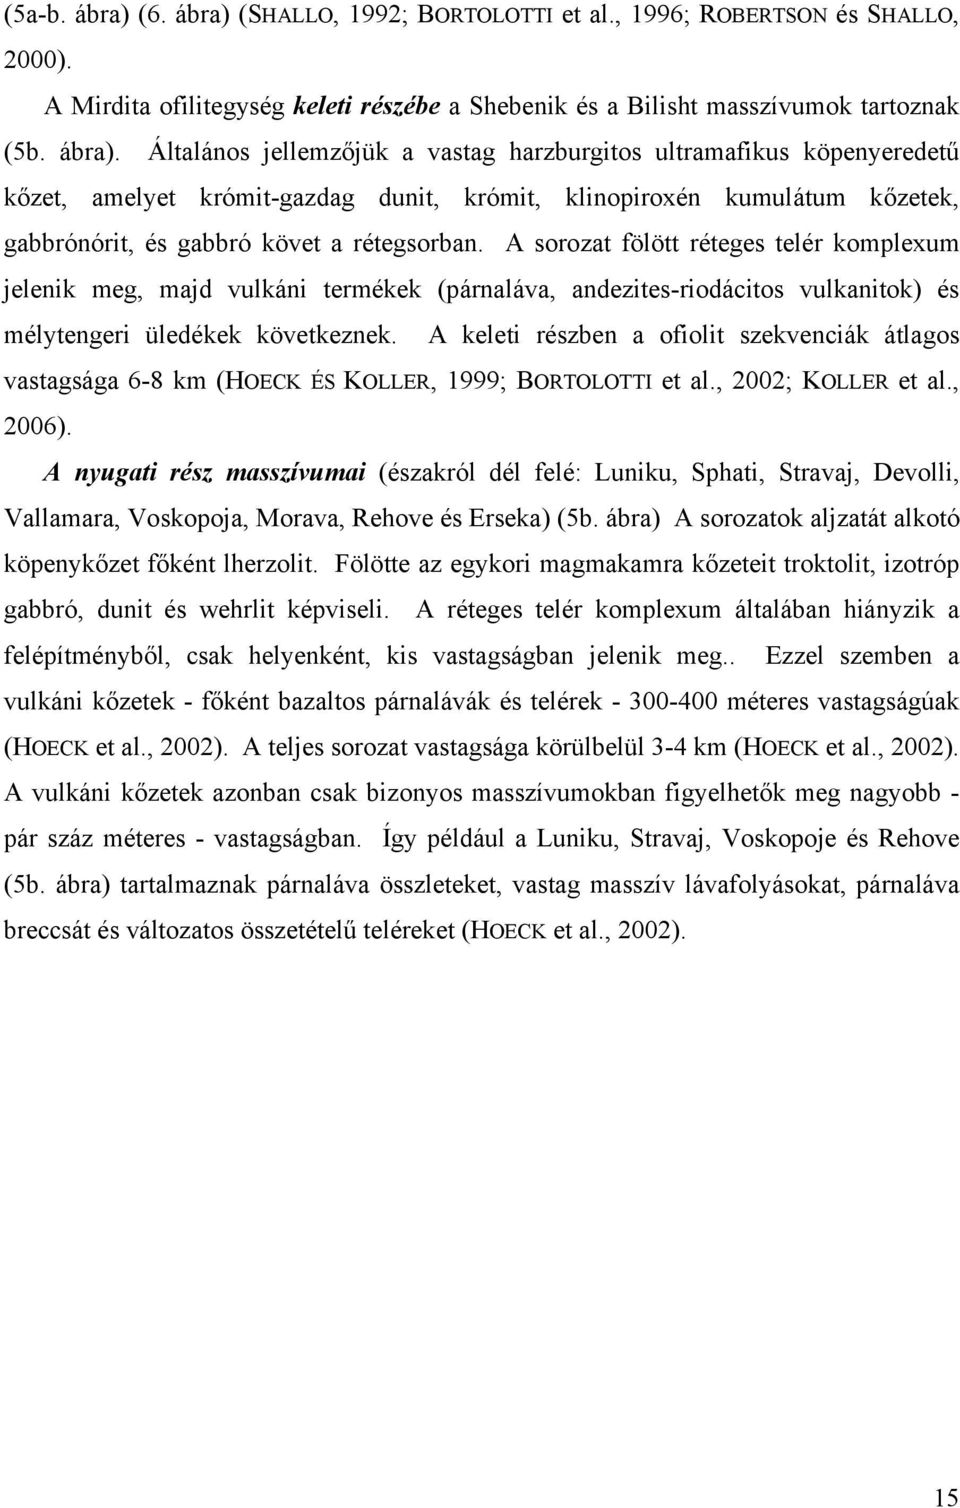 (SHALLO, 1992; BORTOLOTTI et al., 1996; ROBERTSON és SHALLO, 2000). A Mirdita ofilitegység keleti részébe a Shebenik és a Bilisht masszívumok tartoznak (5b. ábra).